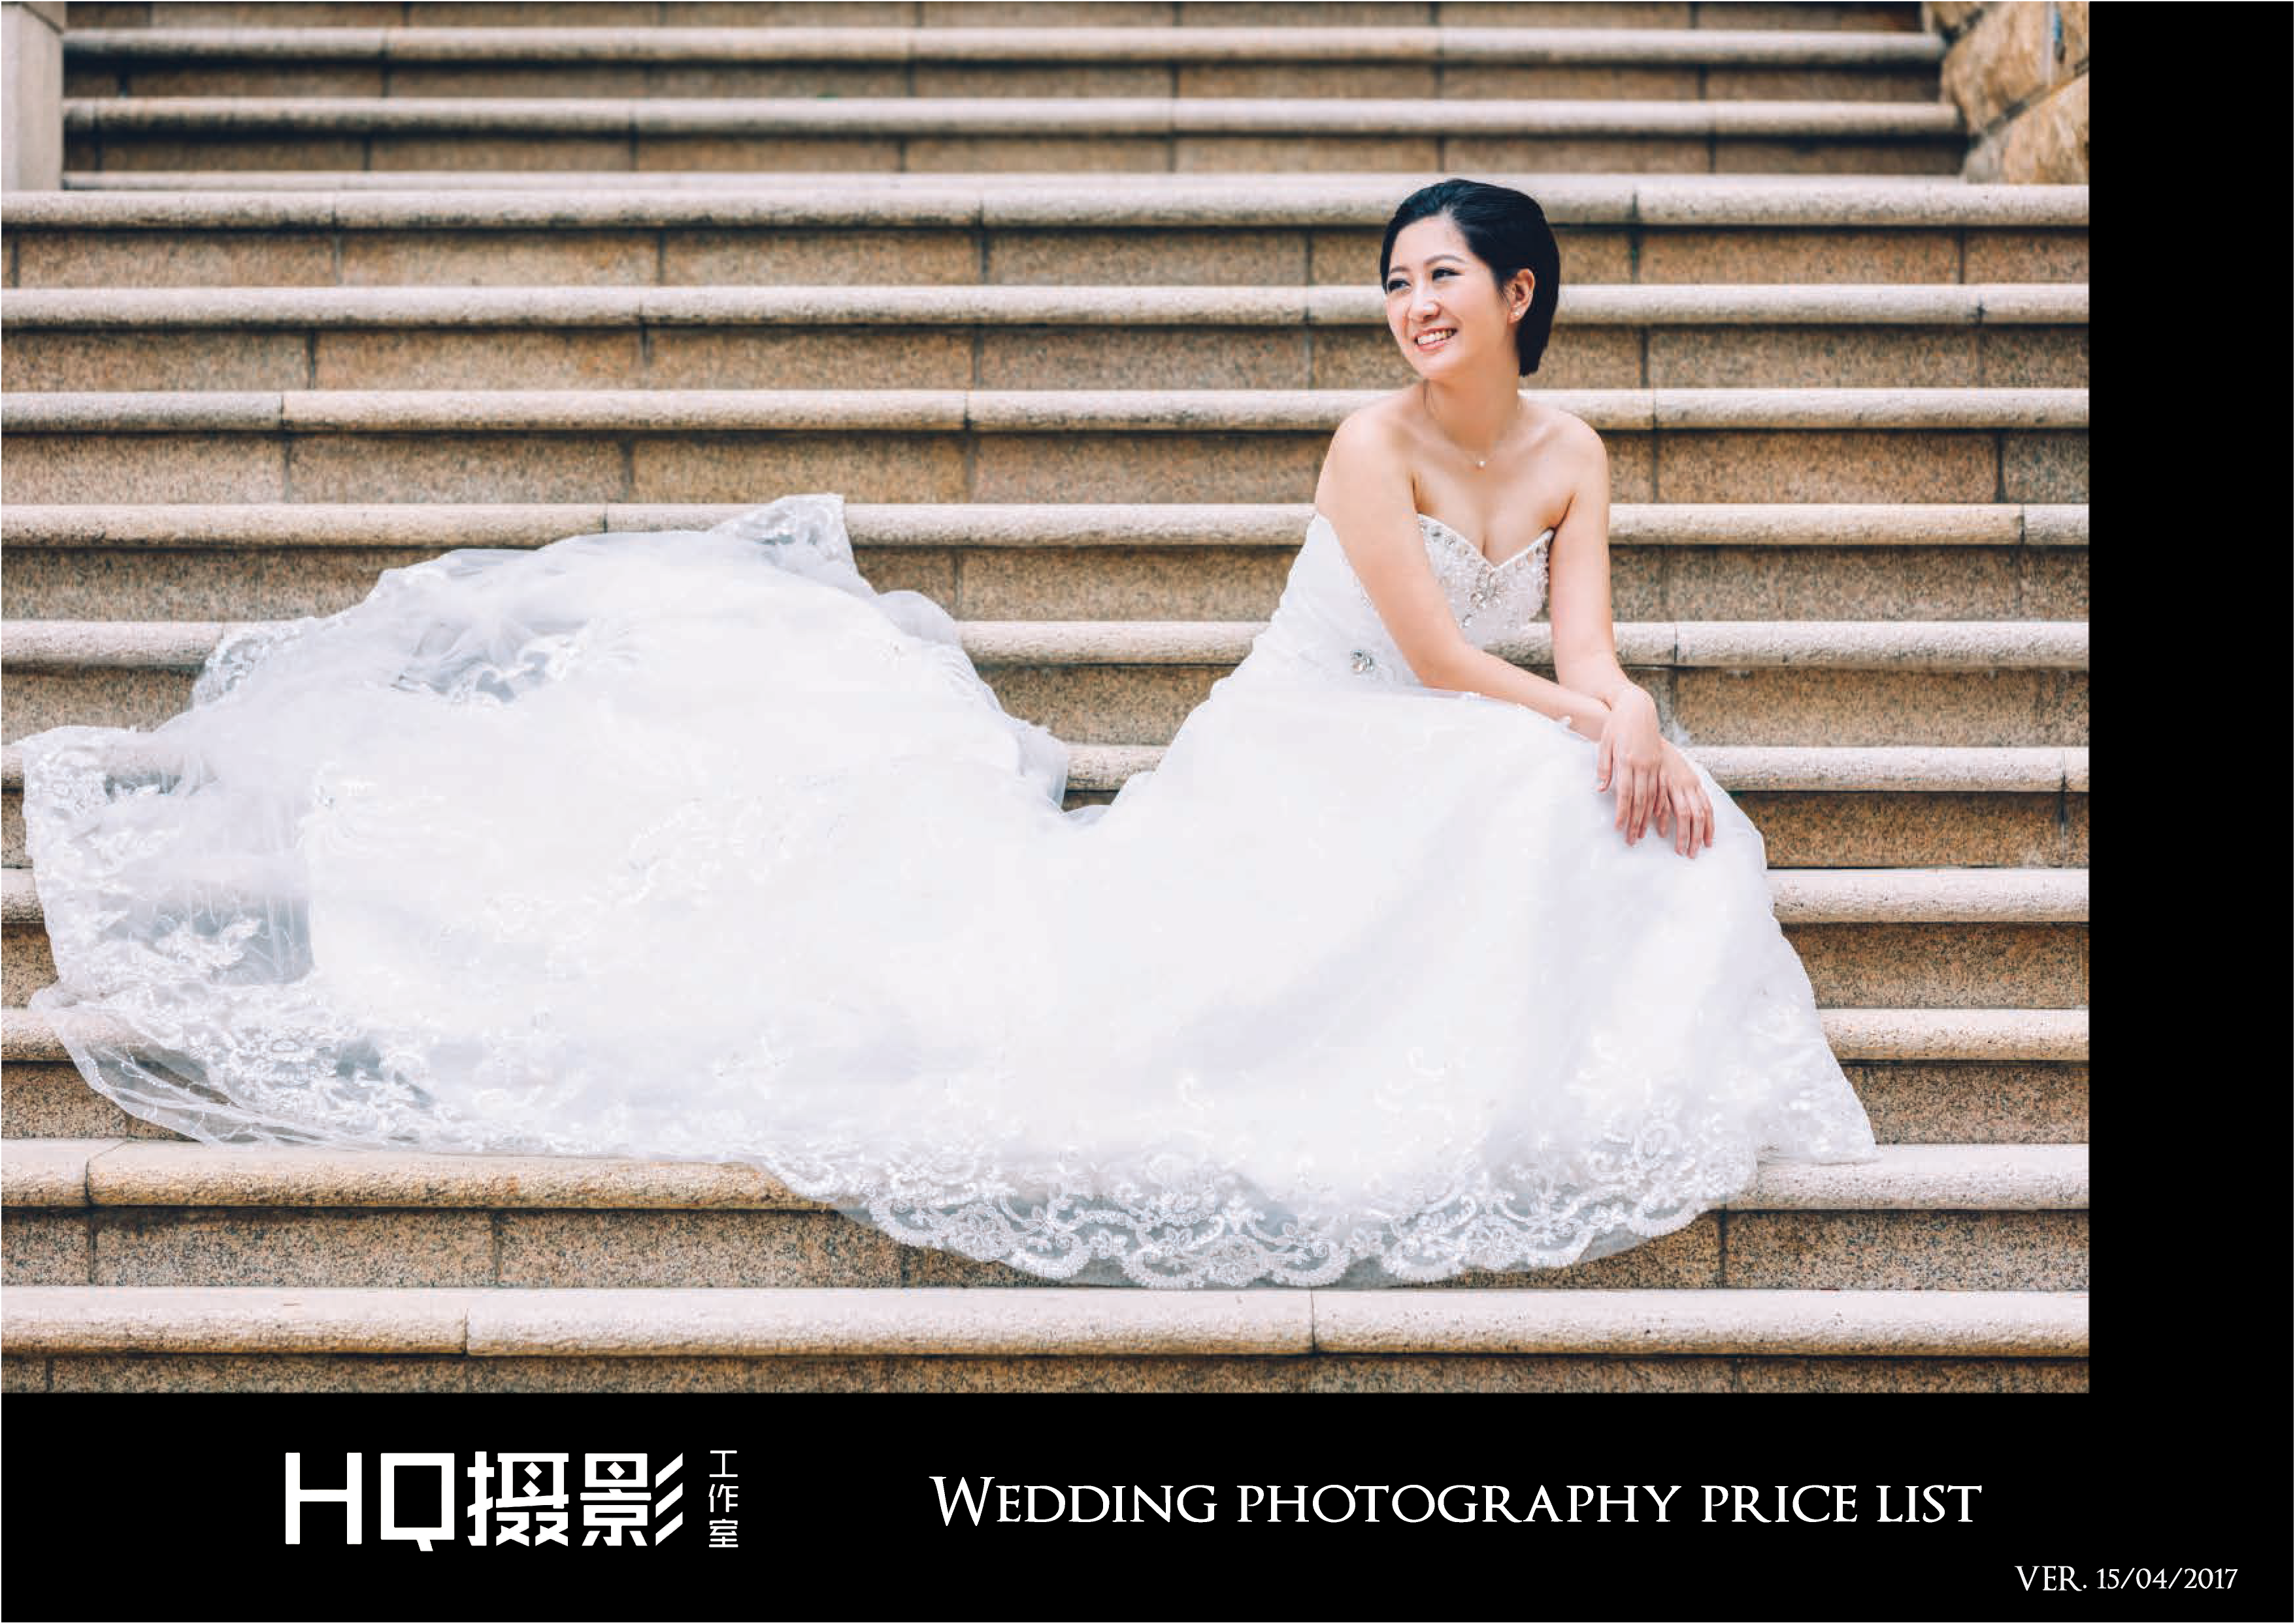 Matt HC Leung之攝影師紀錄: 馬灣婚紗攝影